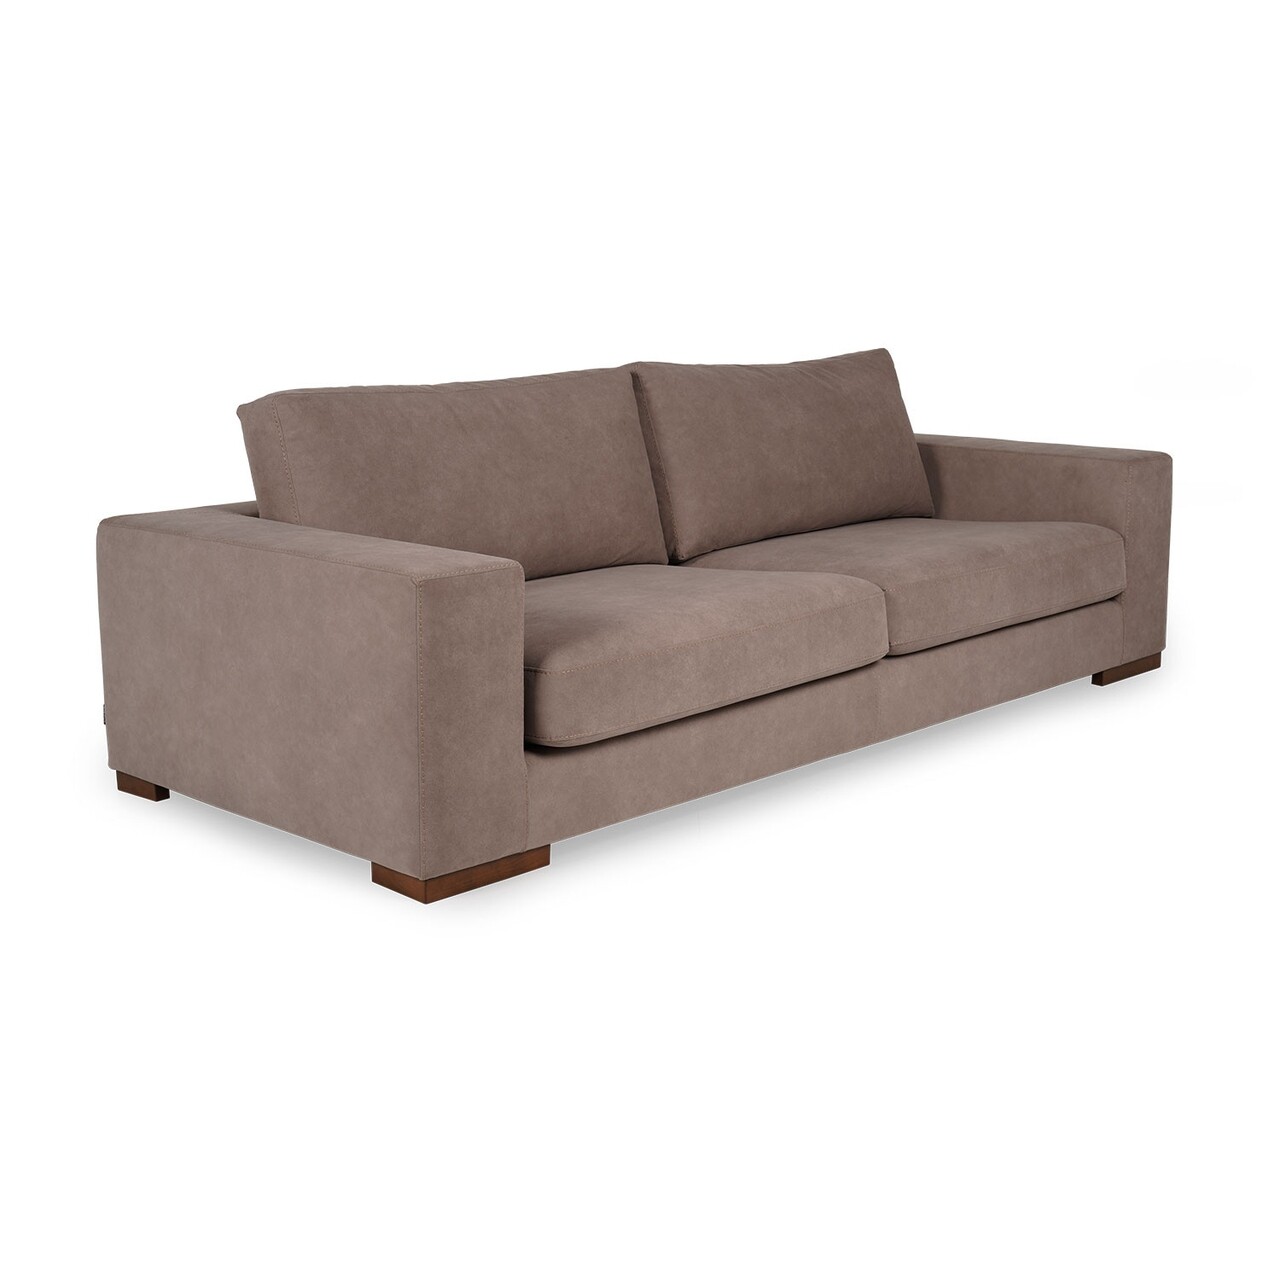 Nplus kanapé, ndesign, 3 személyes, 240x100x82 cm, fa, krémszín